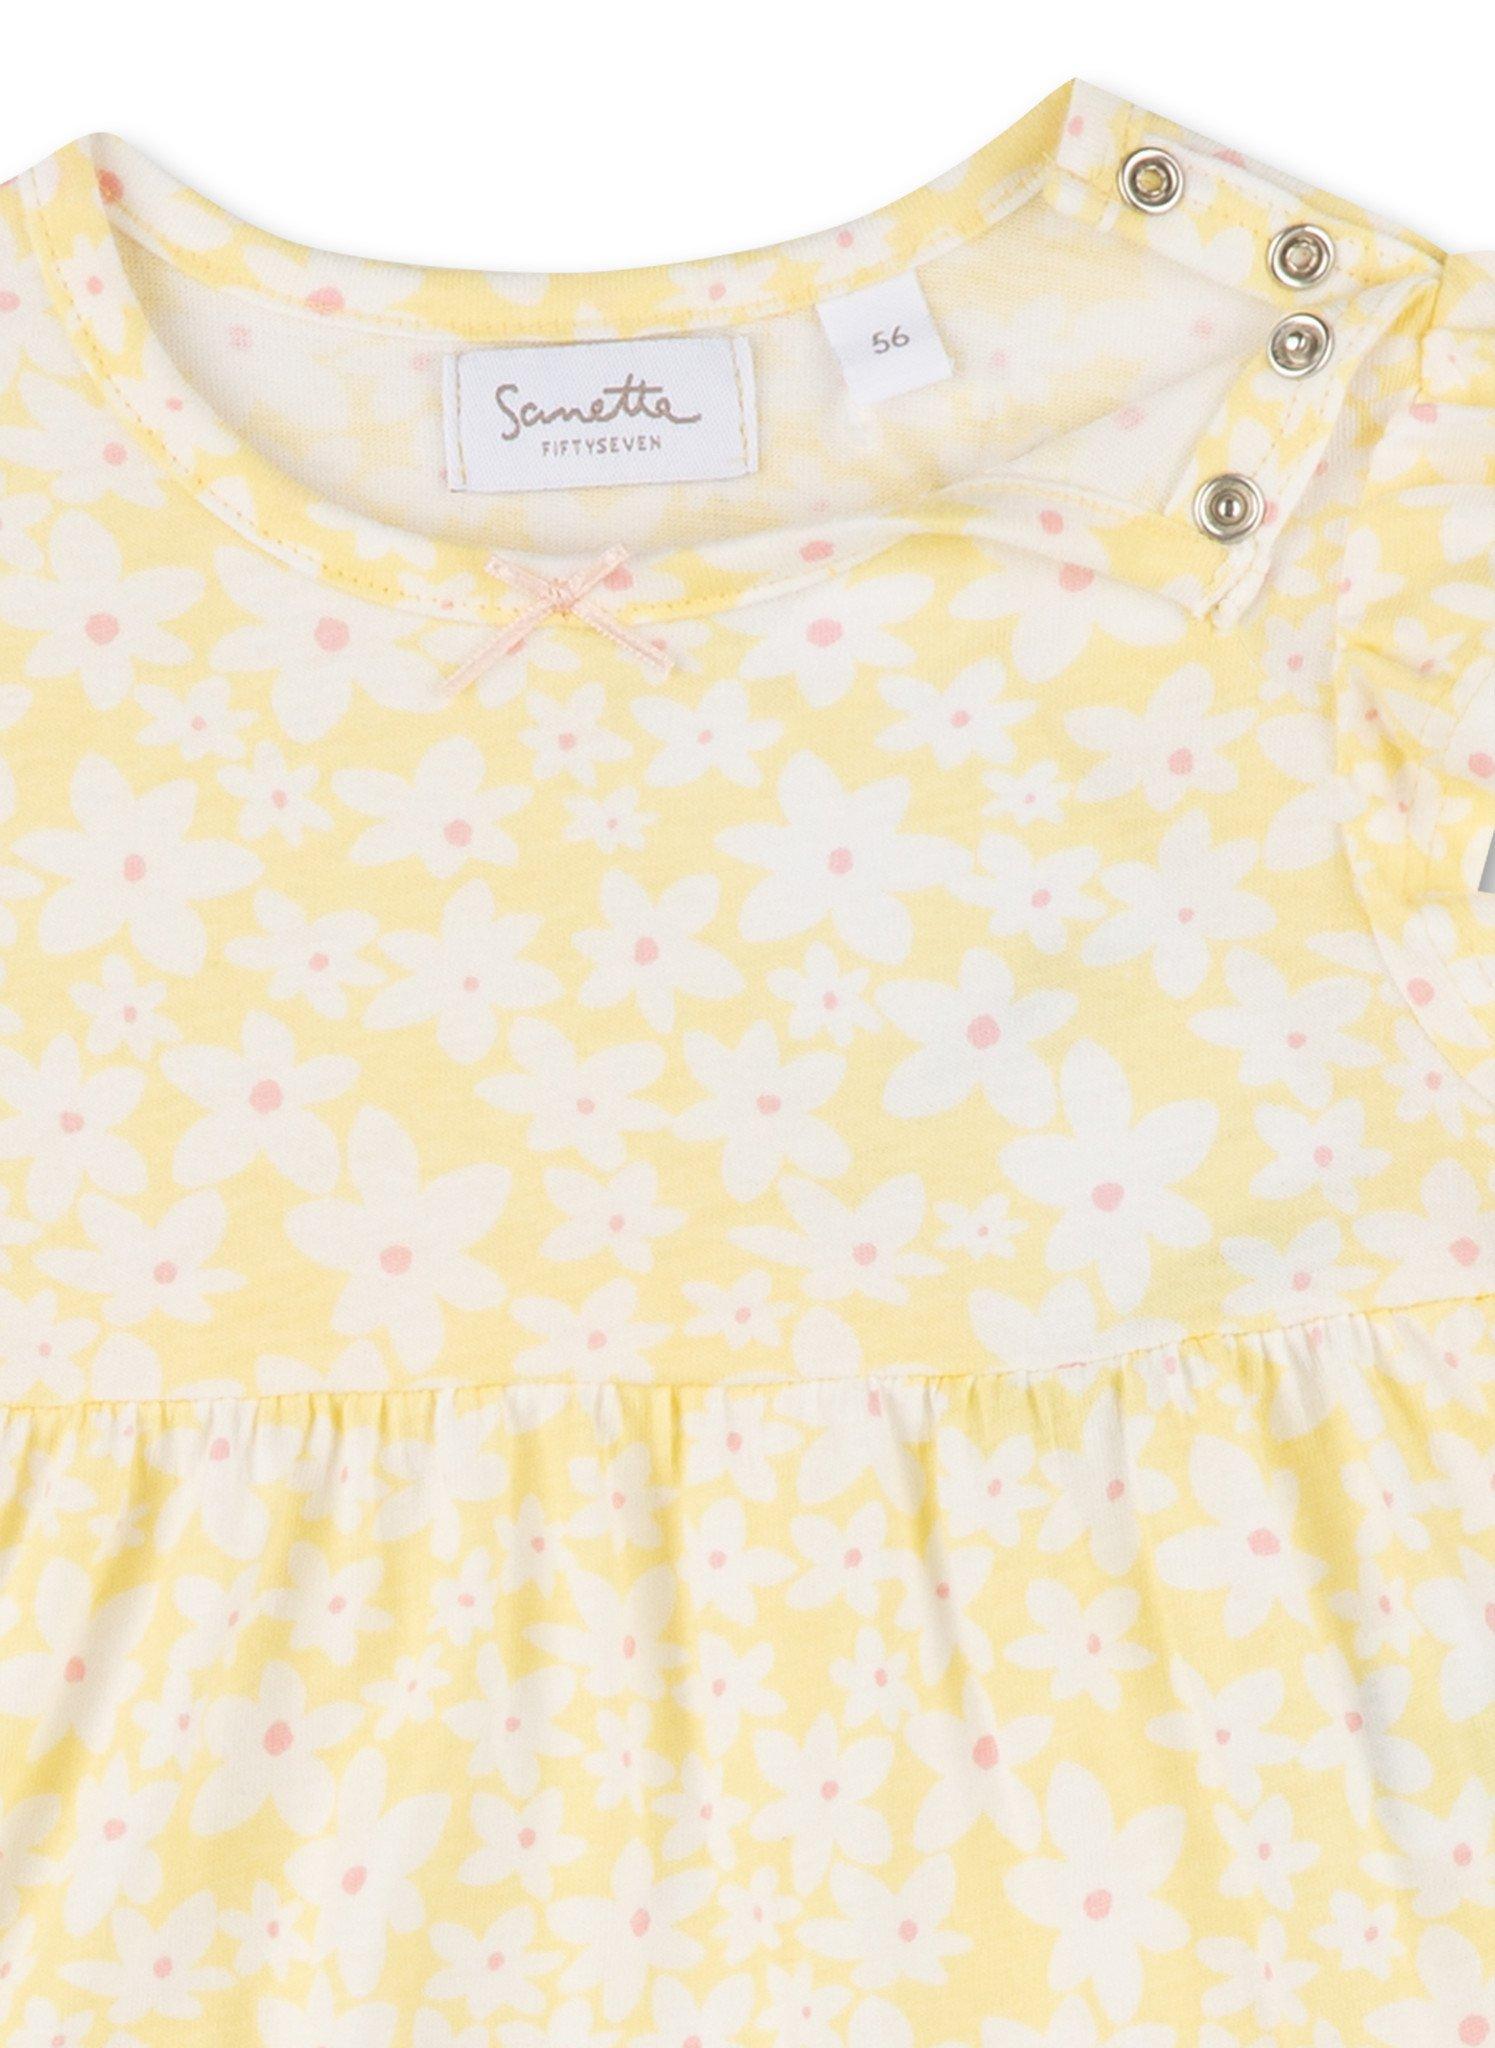 Sanetta Fiftyseven  Baby Mädchen Kleid Blumen gelb 